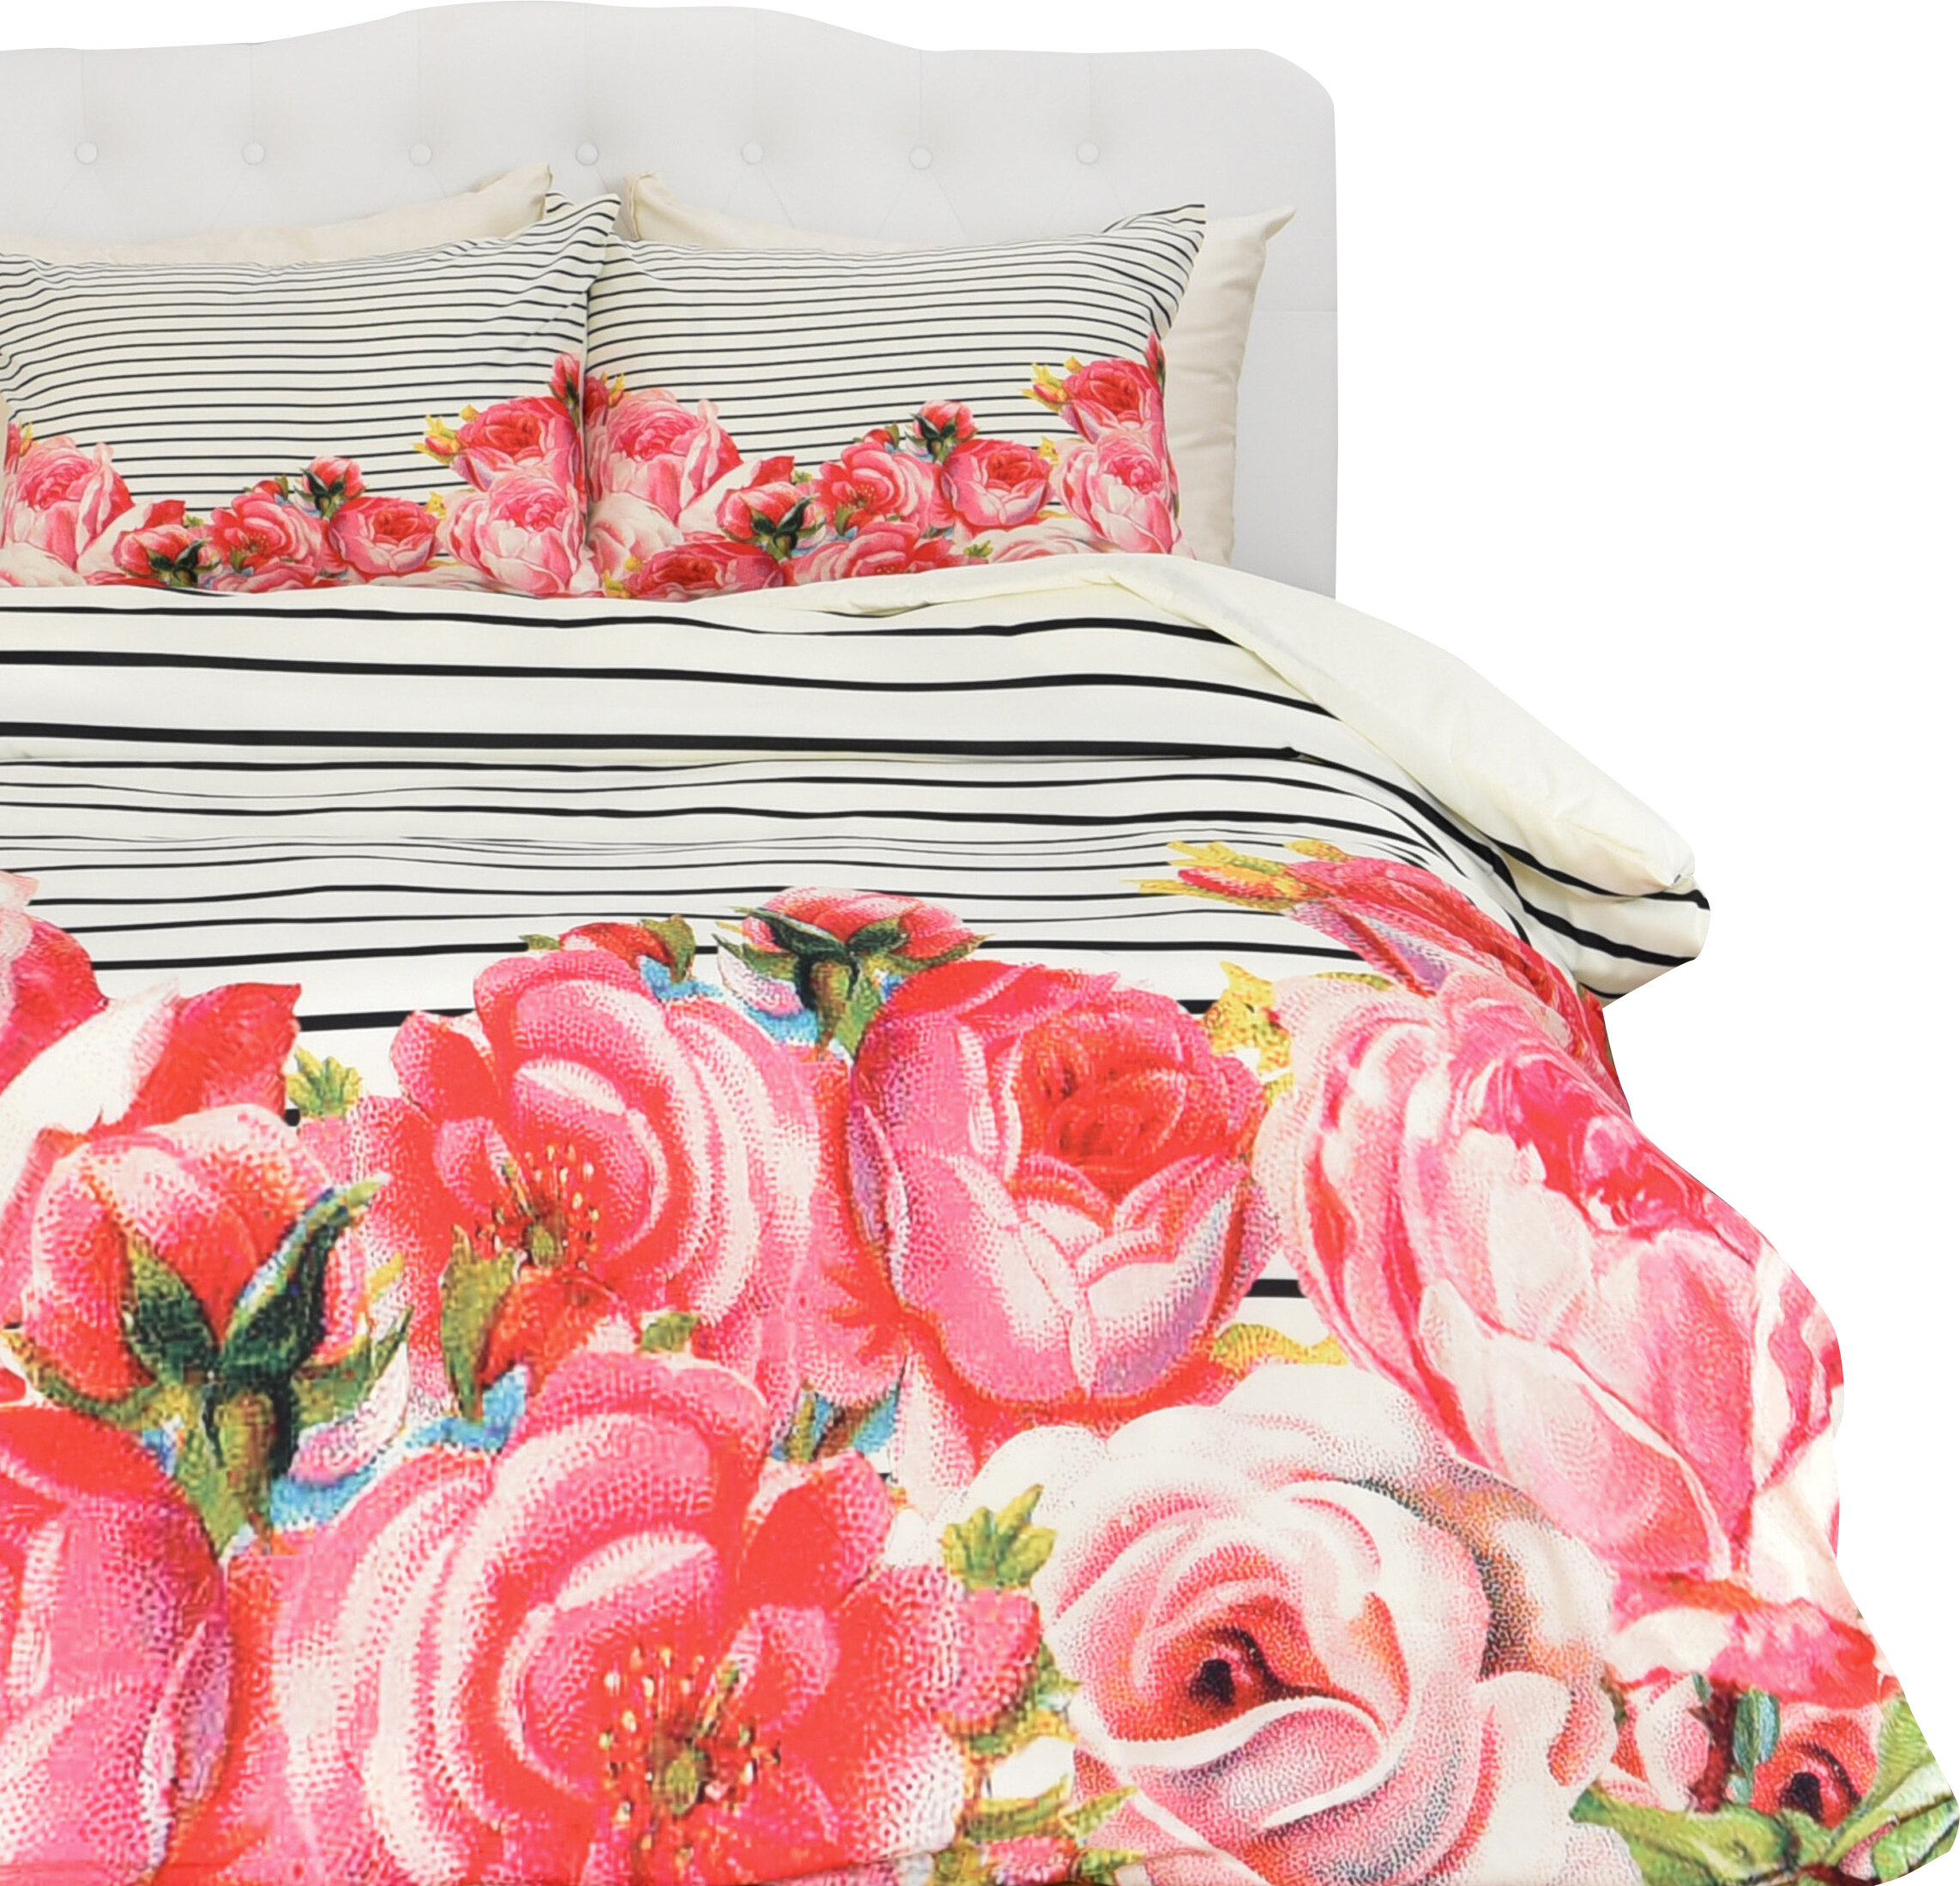 Brayden Studio Mouton Bold Floral And Stripes Duvet Cover Set